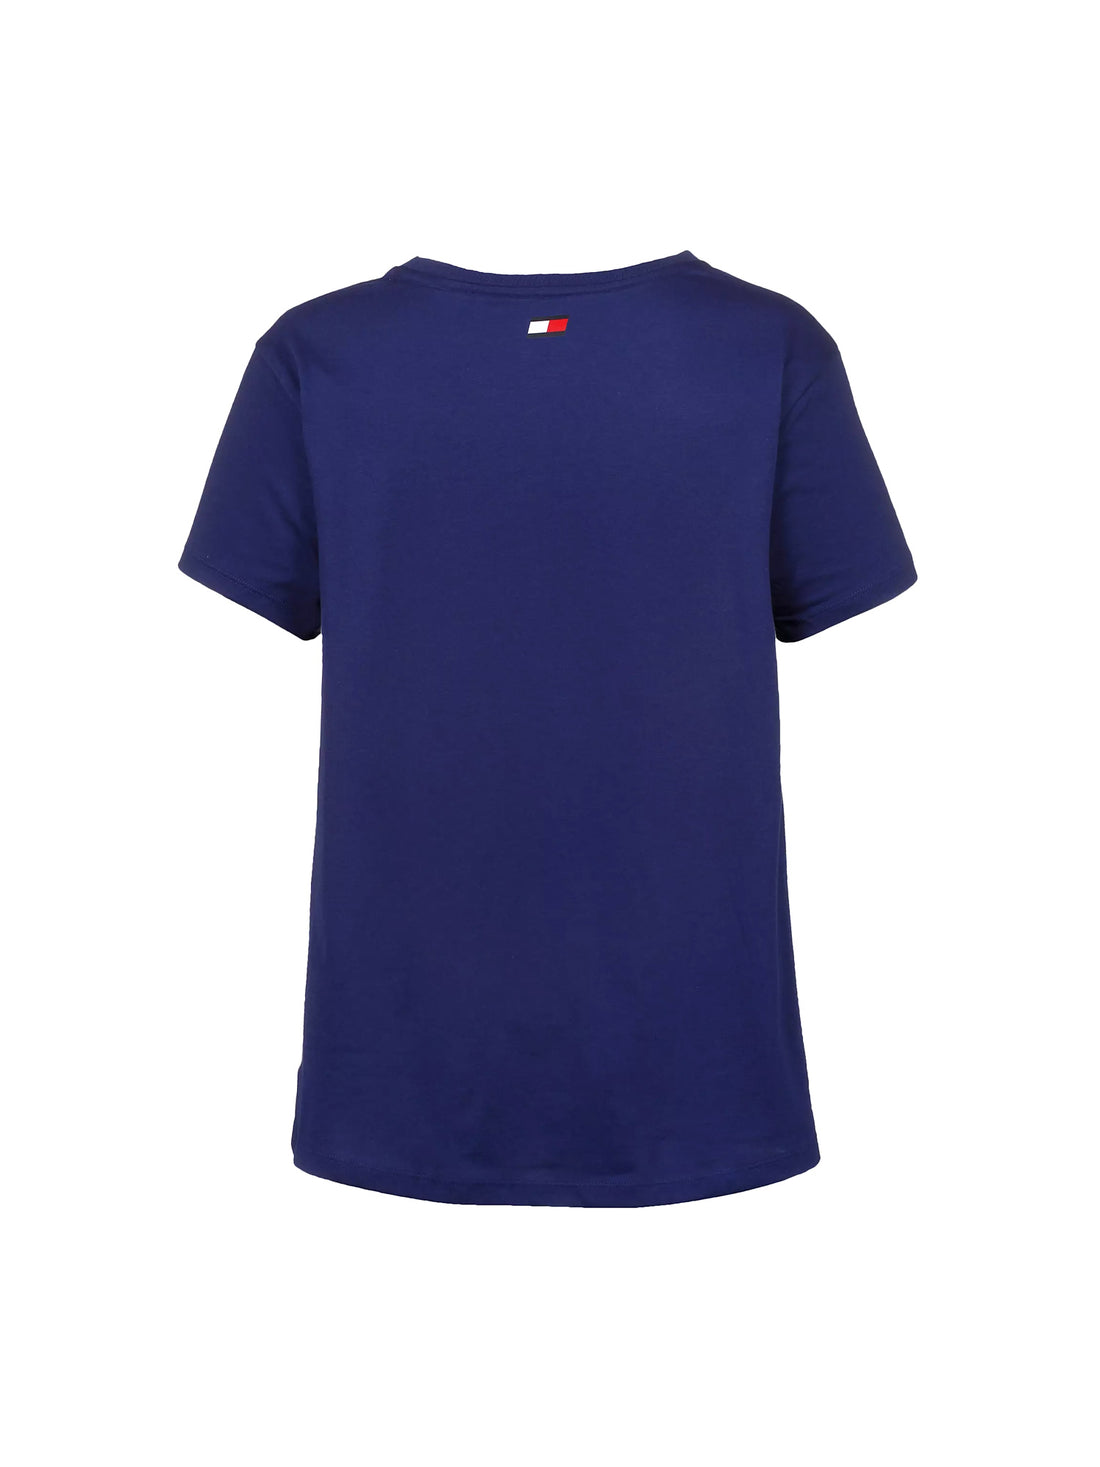 T-shirt Blu Tommy Sport